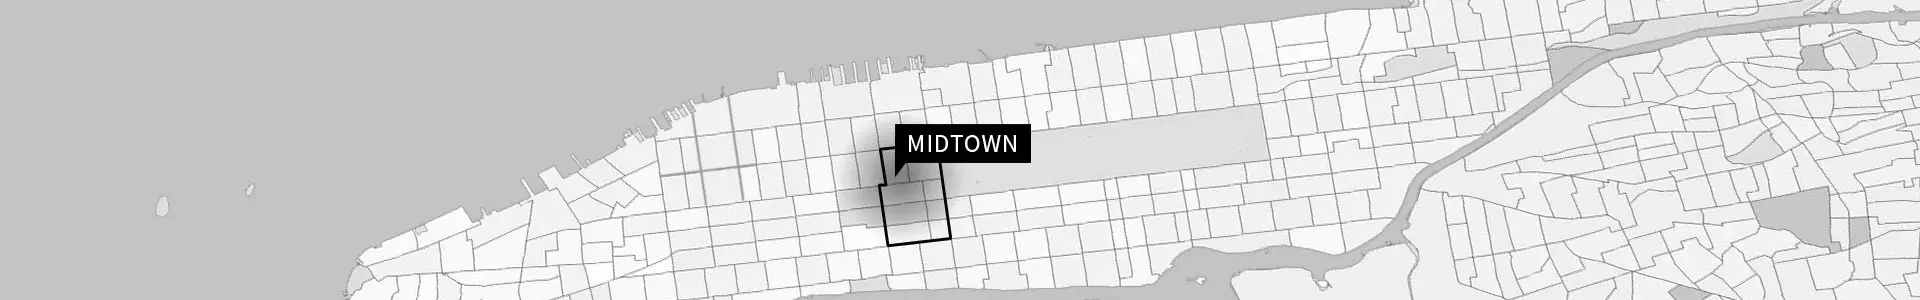 Midtown map